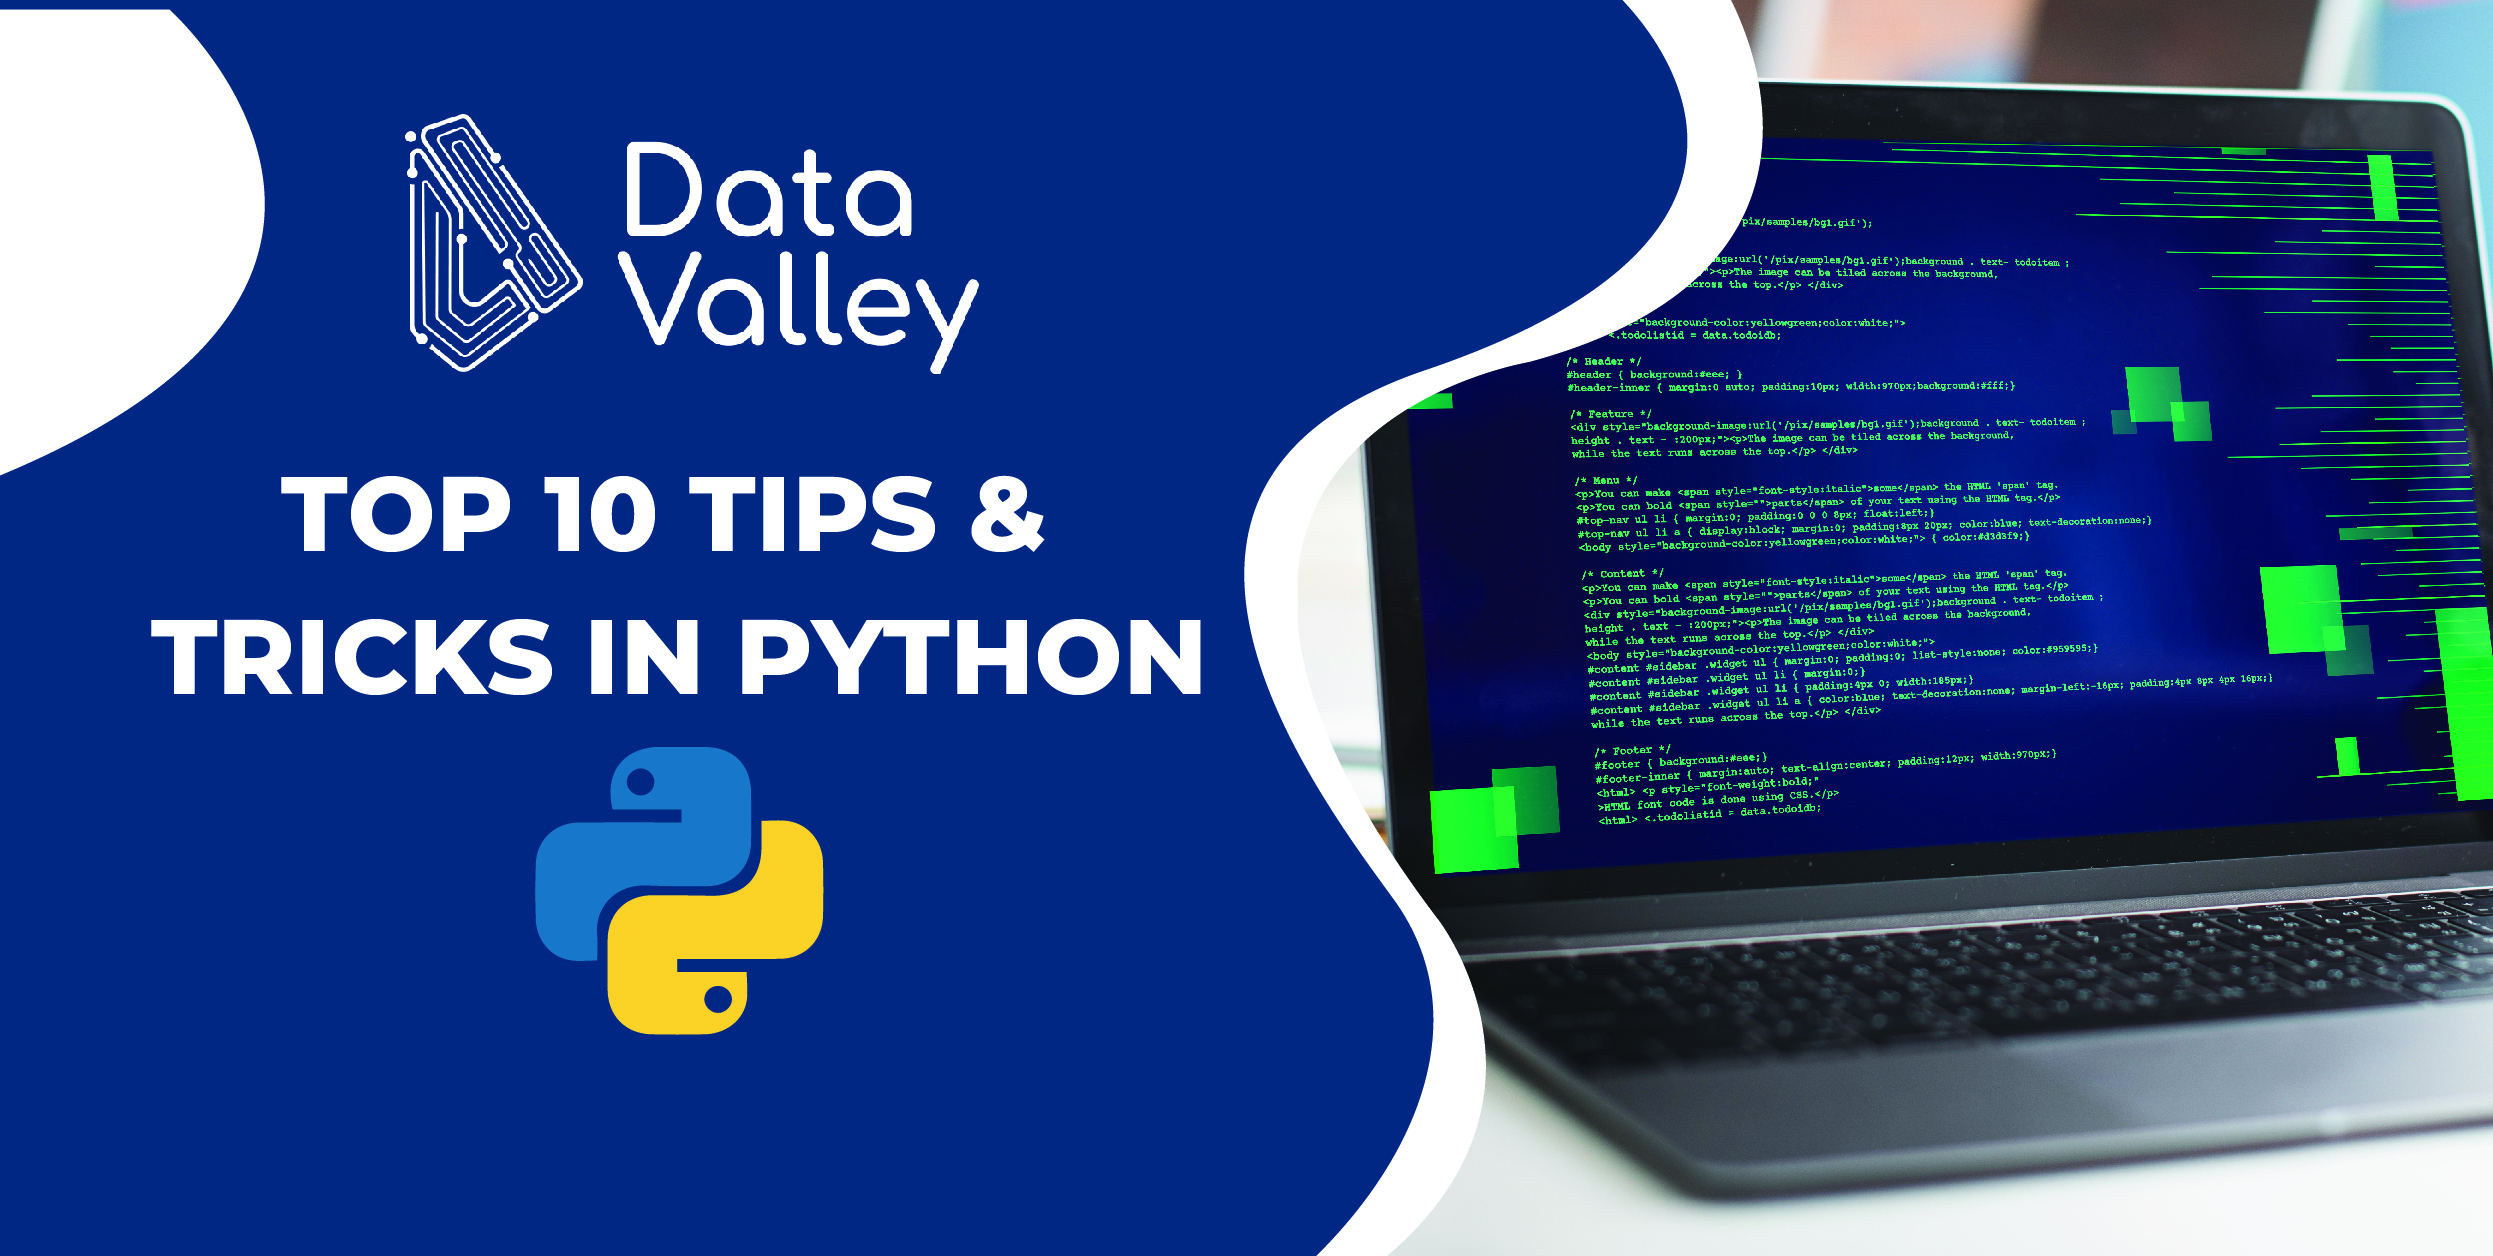 Python Programming: Python là một trong những ngôn ngữ lập trình phổ biến nhất hiện nay và được sử dụng rộng rãi trong nhiều lĩnh vực. Nếu bạn muốn trở thành một lập trình viên chuyên nghiệp, hãy tìm hiểu thêm về Python Programming bằng cách xem hình ảnh liên quan.